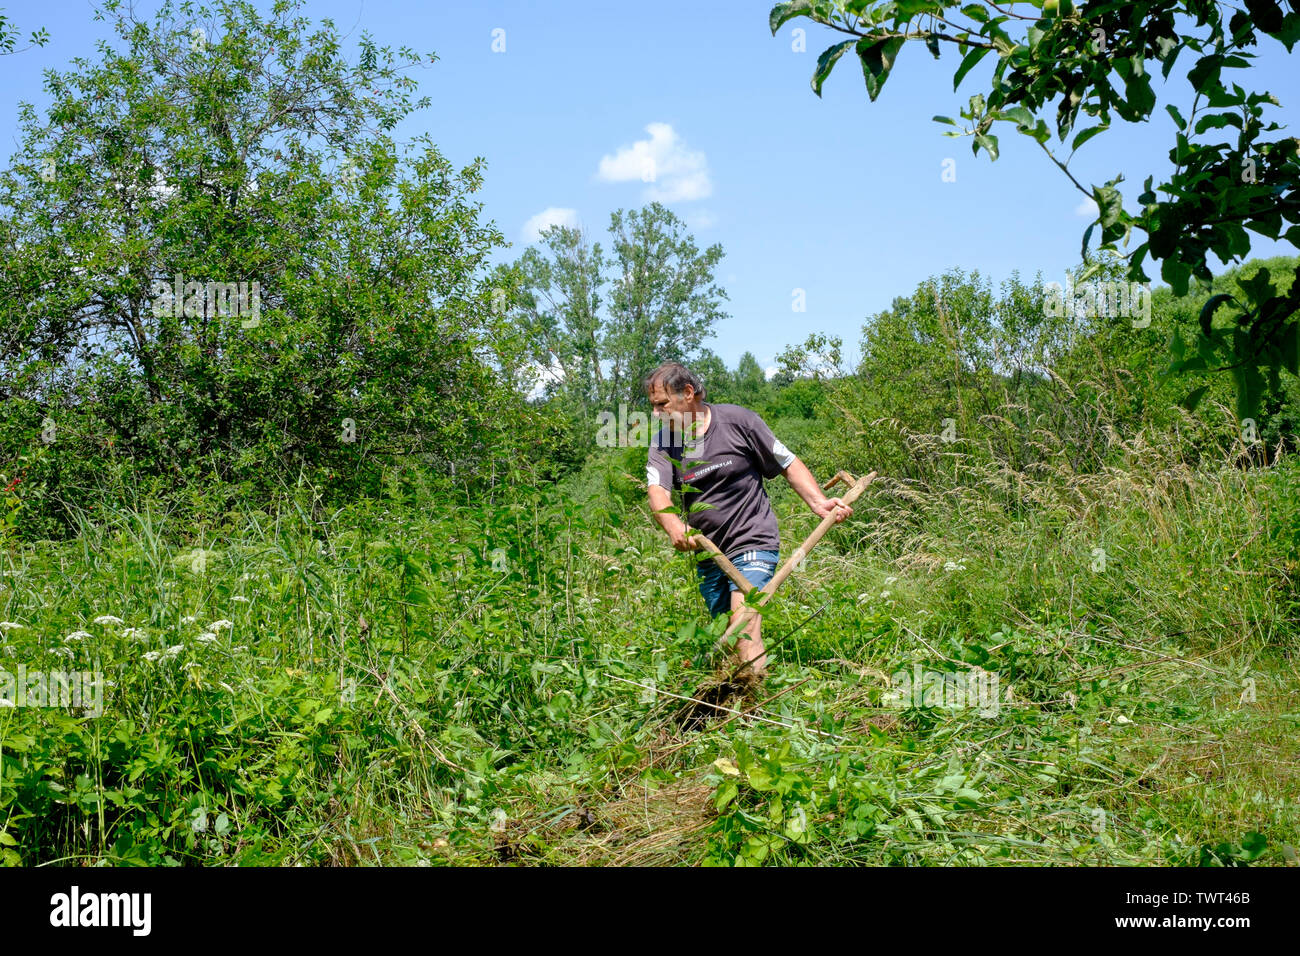 Mann mit einem traditionellen hölzernen behandelt Scythe manuell unten lang Gras und Unkraut in einem ländlichen Garten zala Ungarn schneiden Stockfoto